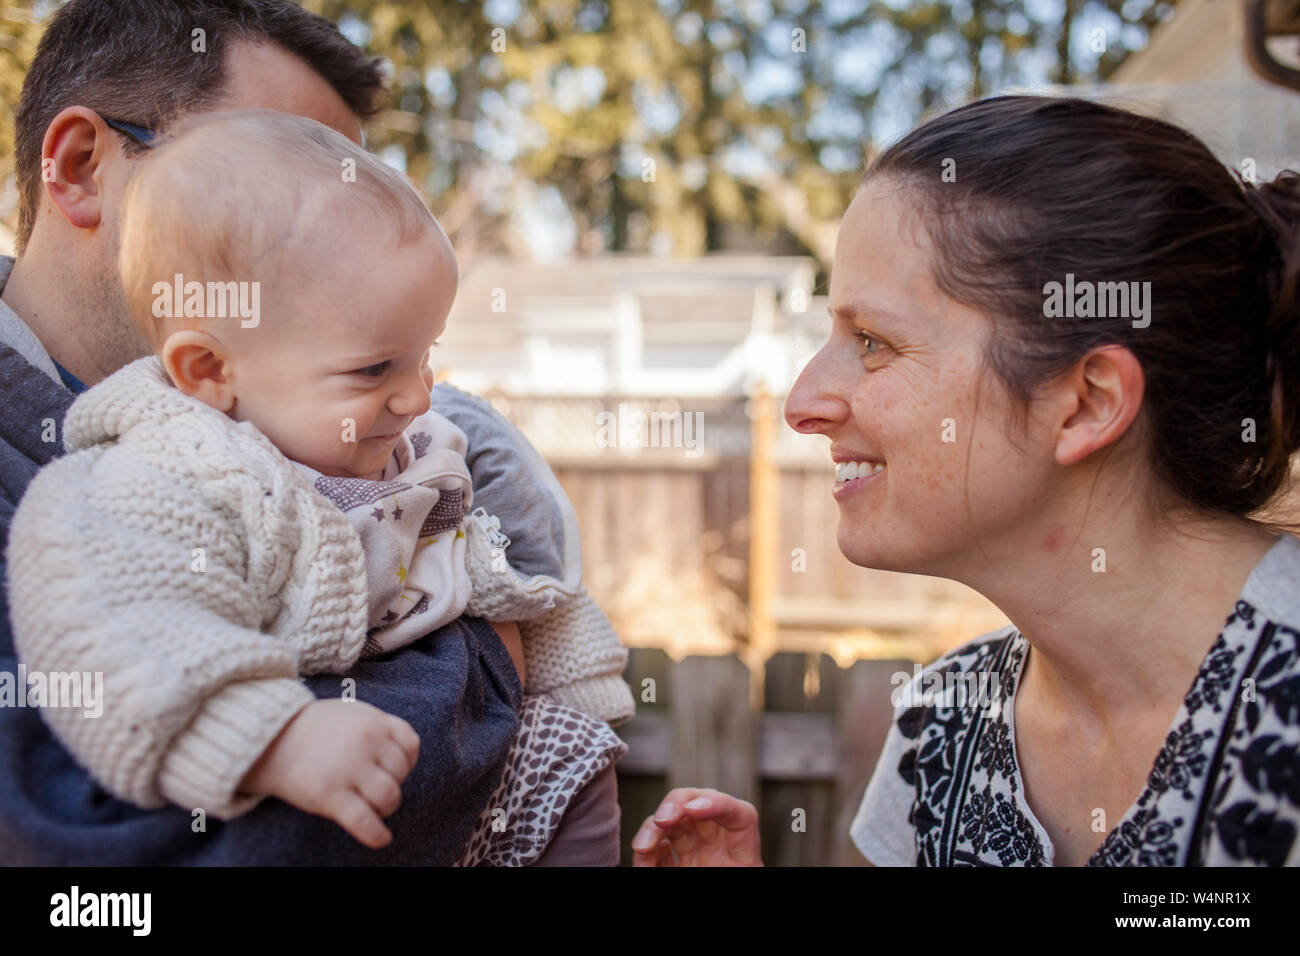 Un happy baby sorrisi a madre mentre viene mantenuto in padre di braccia Foto Stock